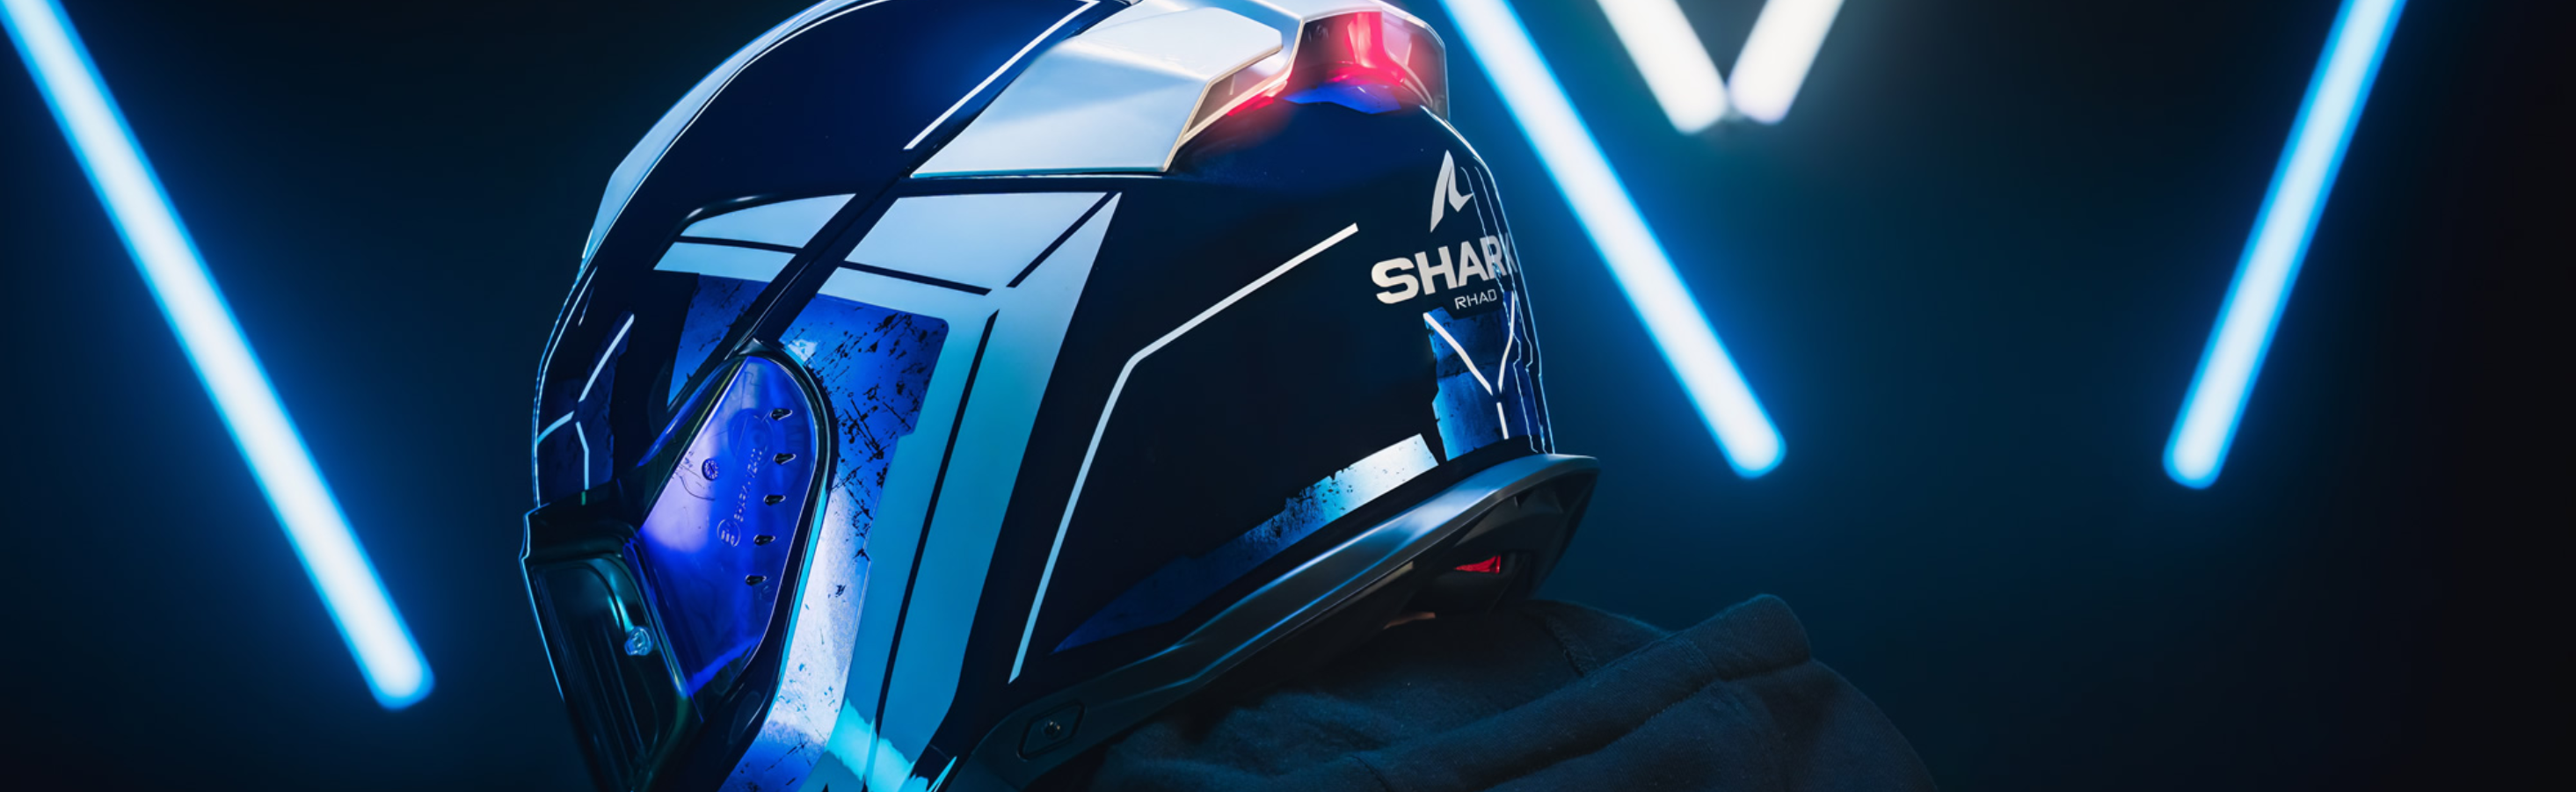 CASCO SHARK Yamaha - CORVINO MOTO SRL